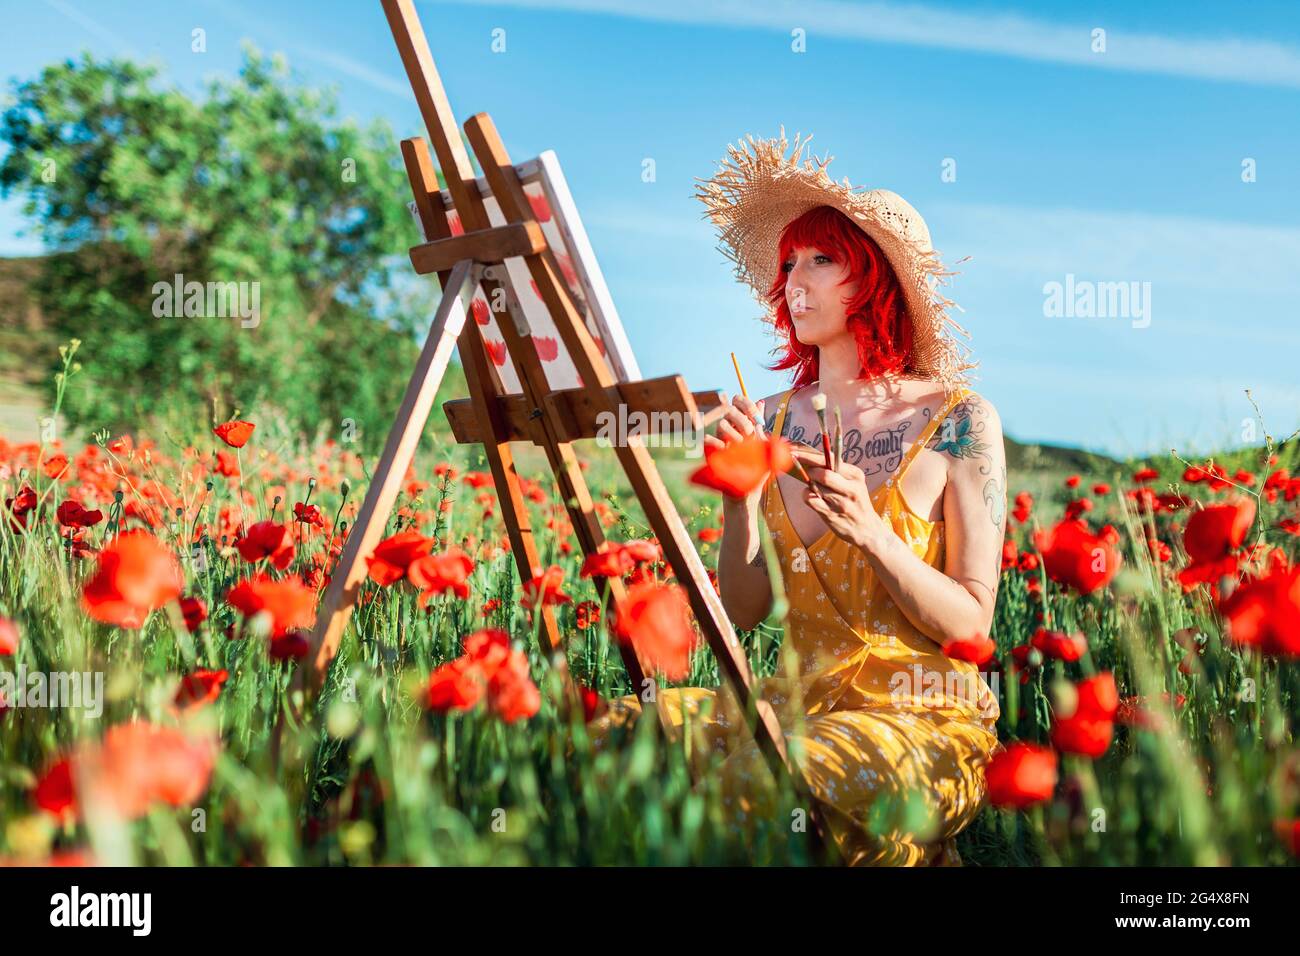 Femme avec des cheveux teints rouge peinture sur toile au champ de pavot Banque D'Images